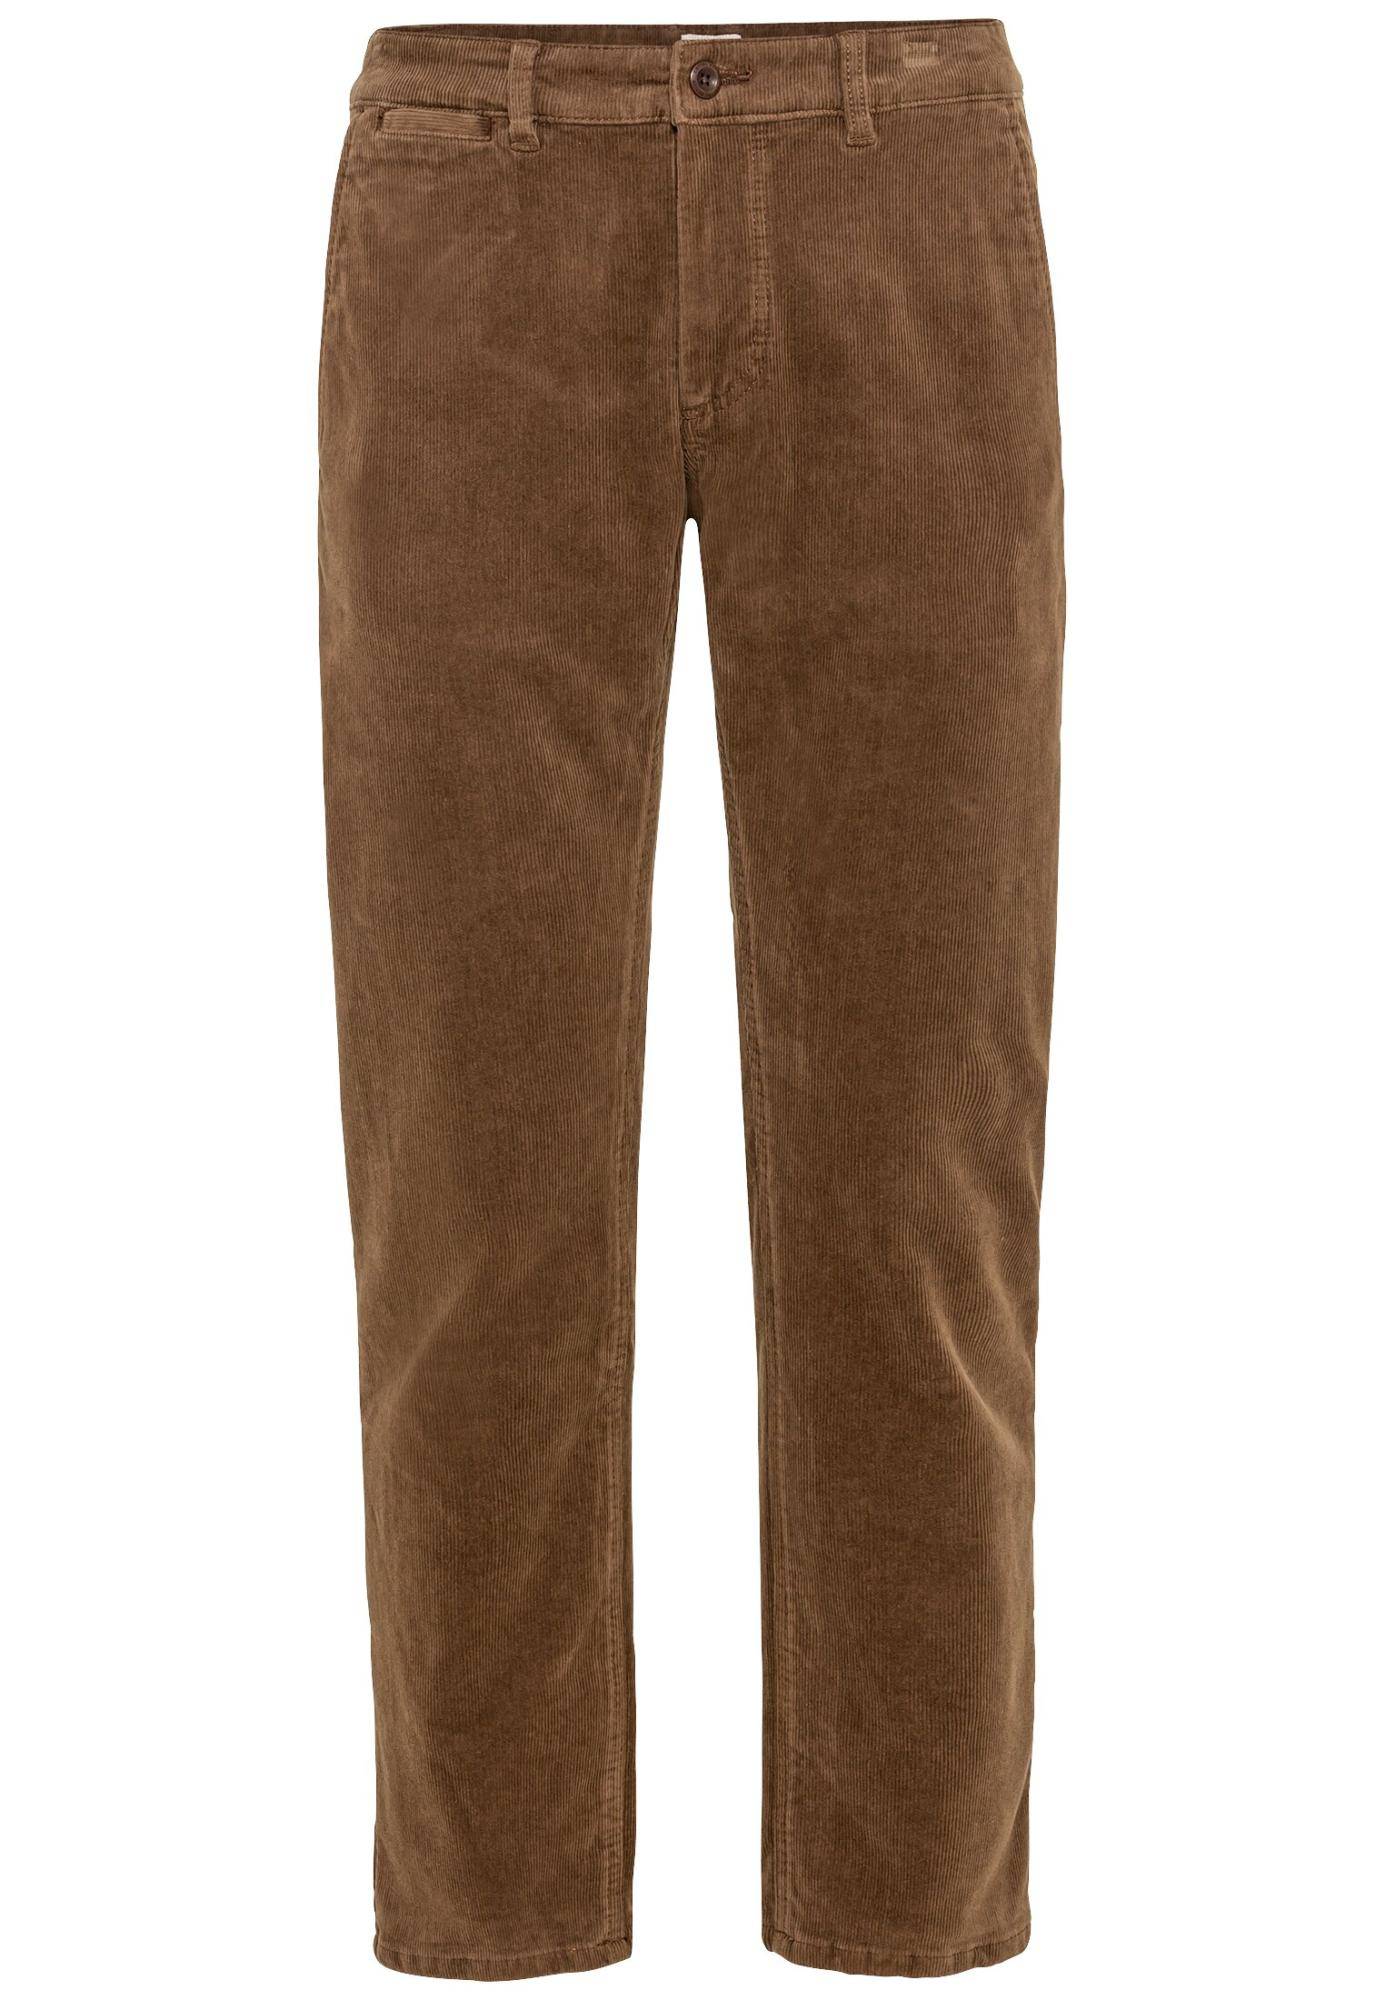 Мужские брюки Camel Active, коричневые, цвет коричневый, размер 36 - фото 1